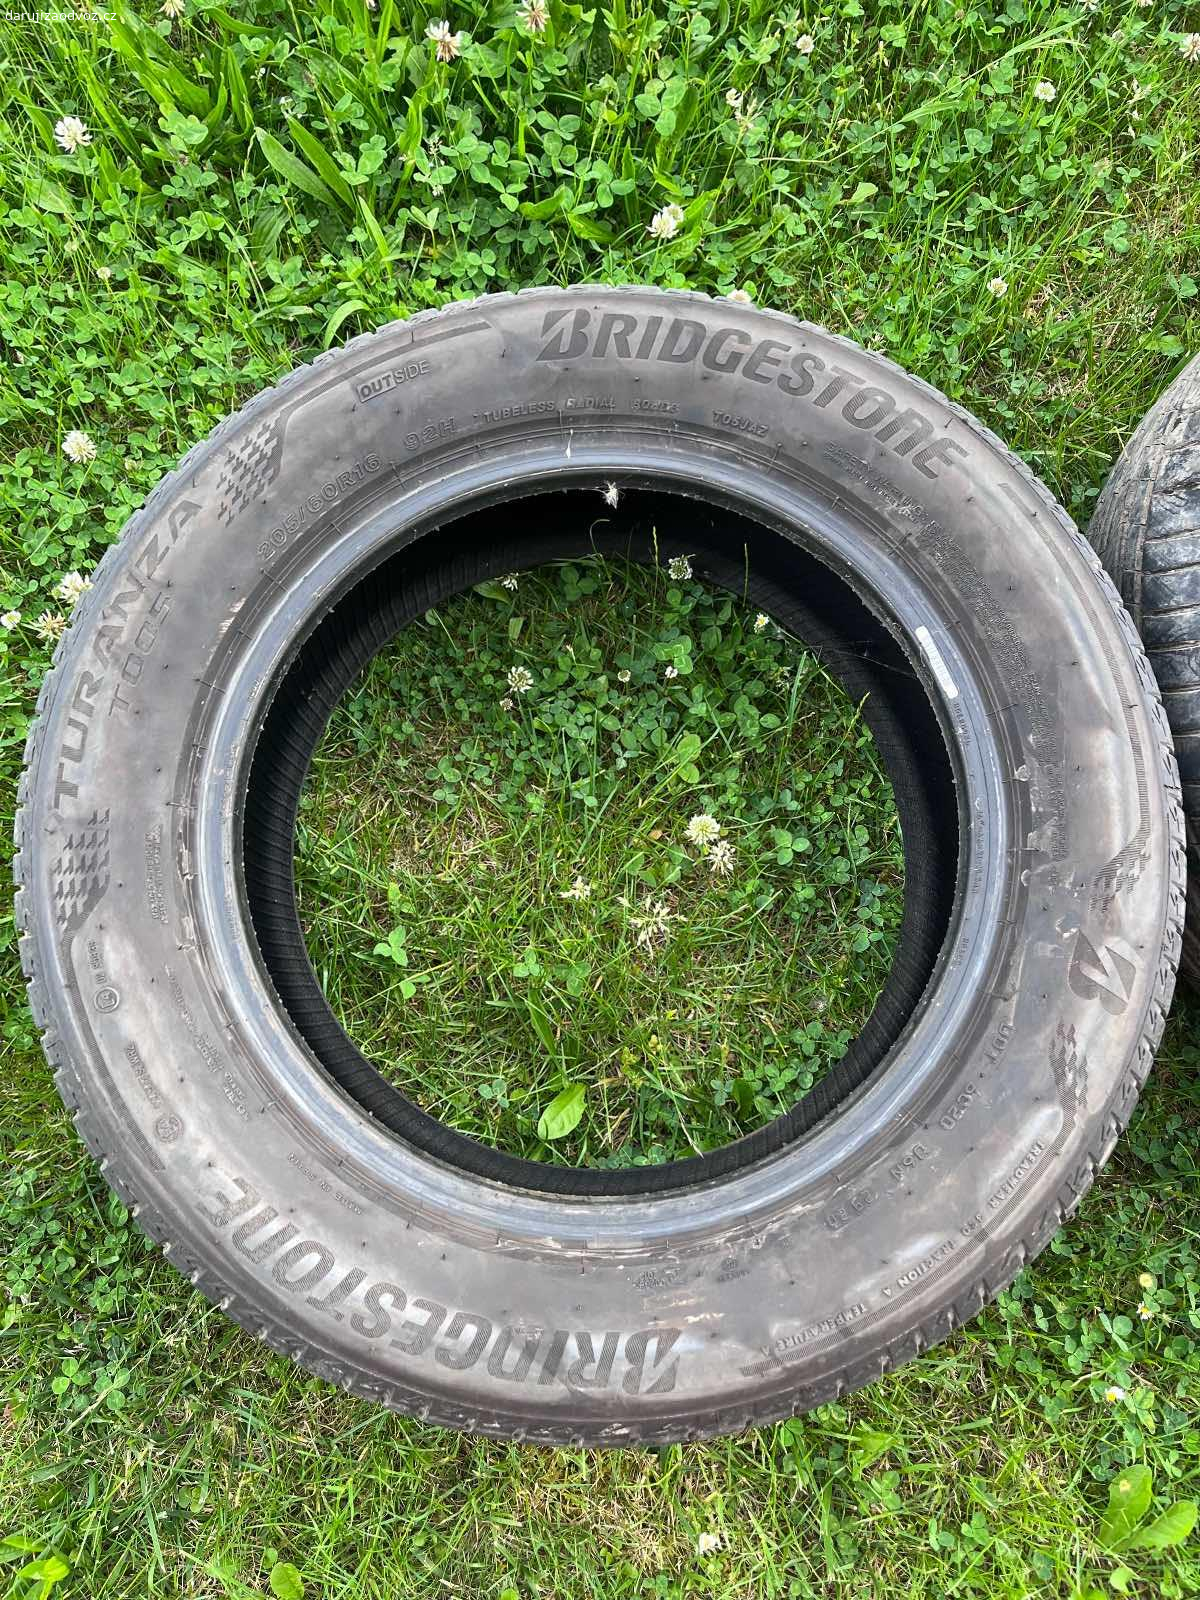 Daruji pneumatiky. Bridgestone letní pneumatiky, 205/60 R16, DOT 2920, 4kusy - z toho v jedné je hřebík a jedna je z boku prořízlá cca 2 cm (viz. fotografie). Nutné odvézt jako komplet.